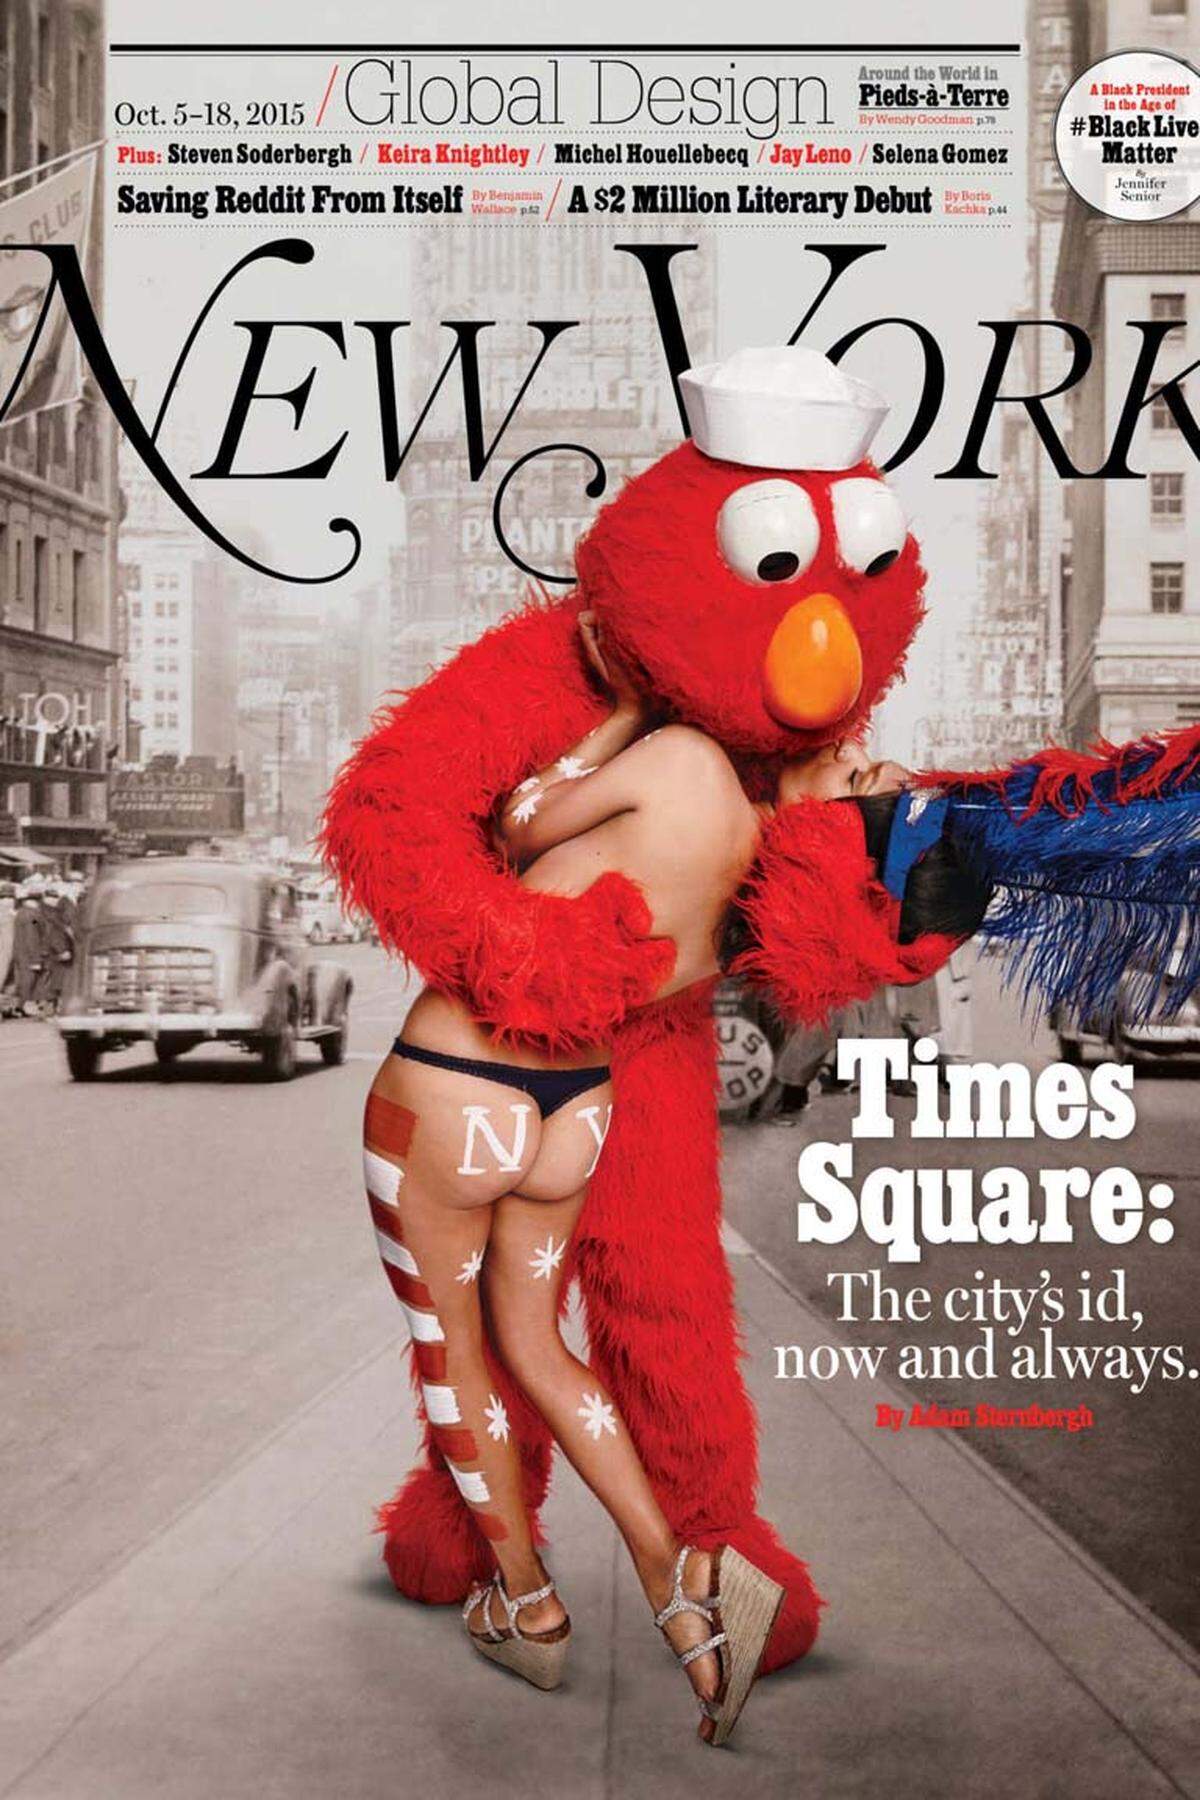 Als "Brainiest Cover" konnte sich das New York Magazine durchsetzen. Die Oktober-Ausgabe, die von Bobby Doherty fotografiert wurde, erhielt 25 Prozent der Stimmen.